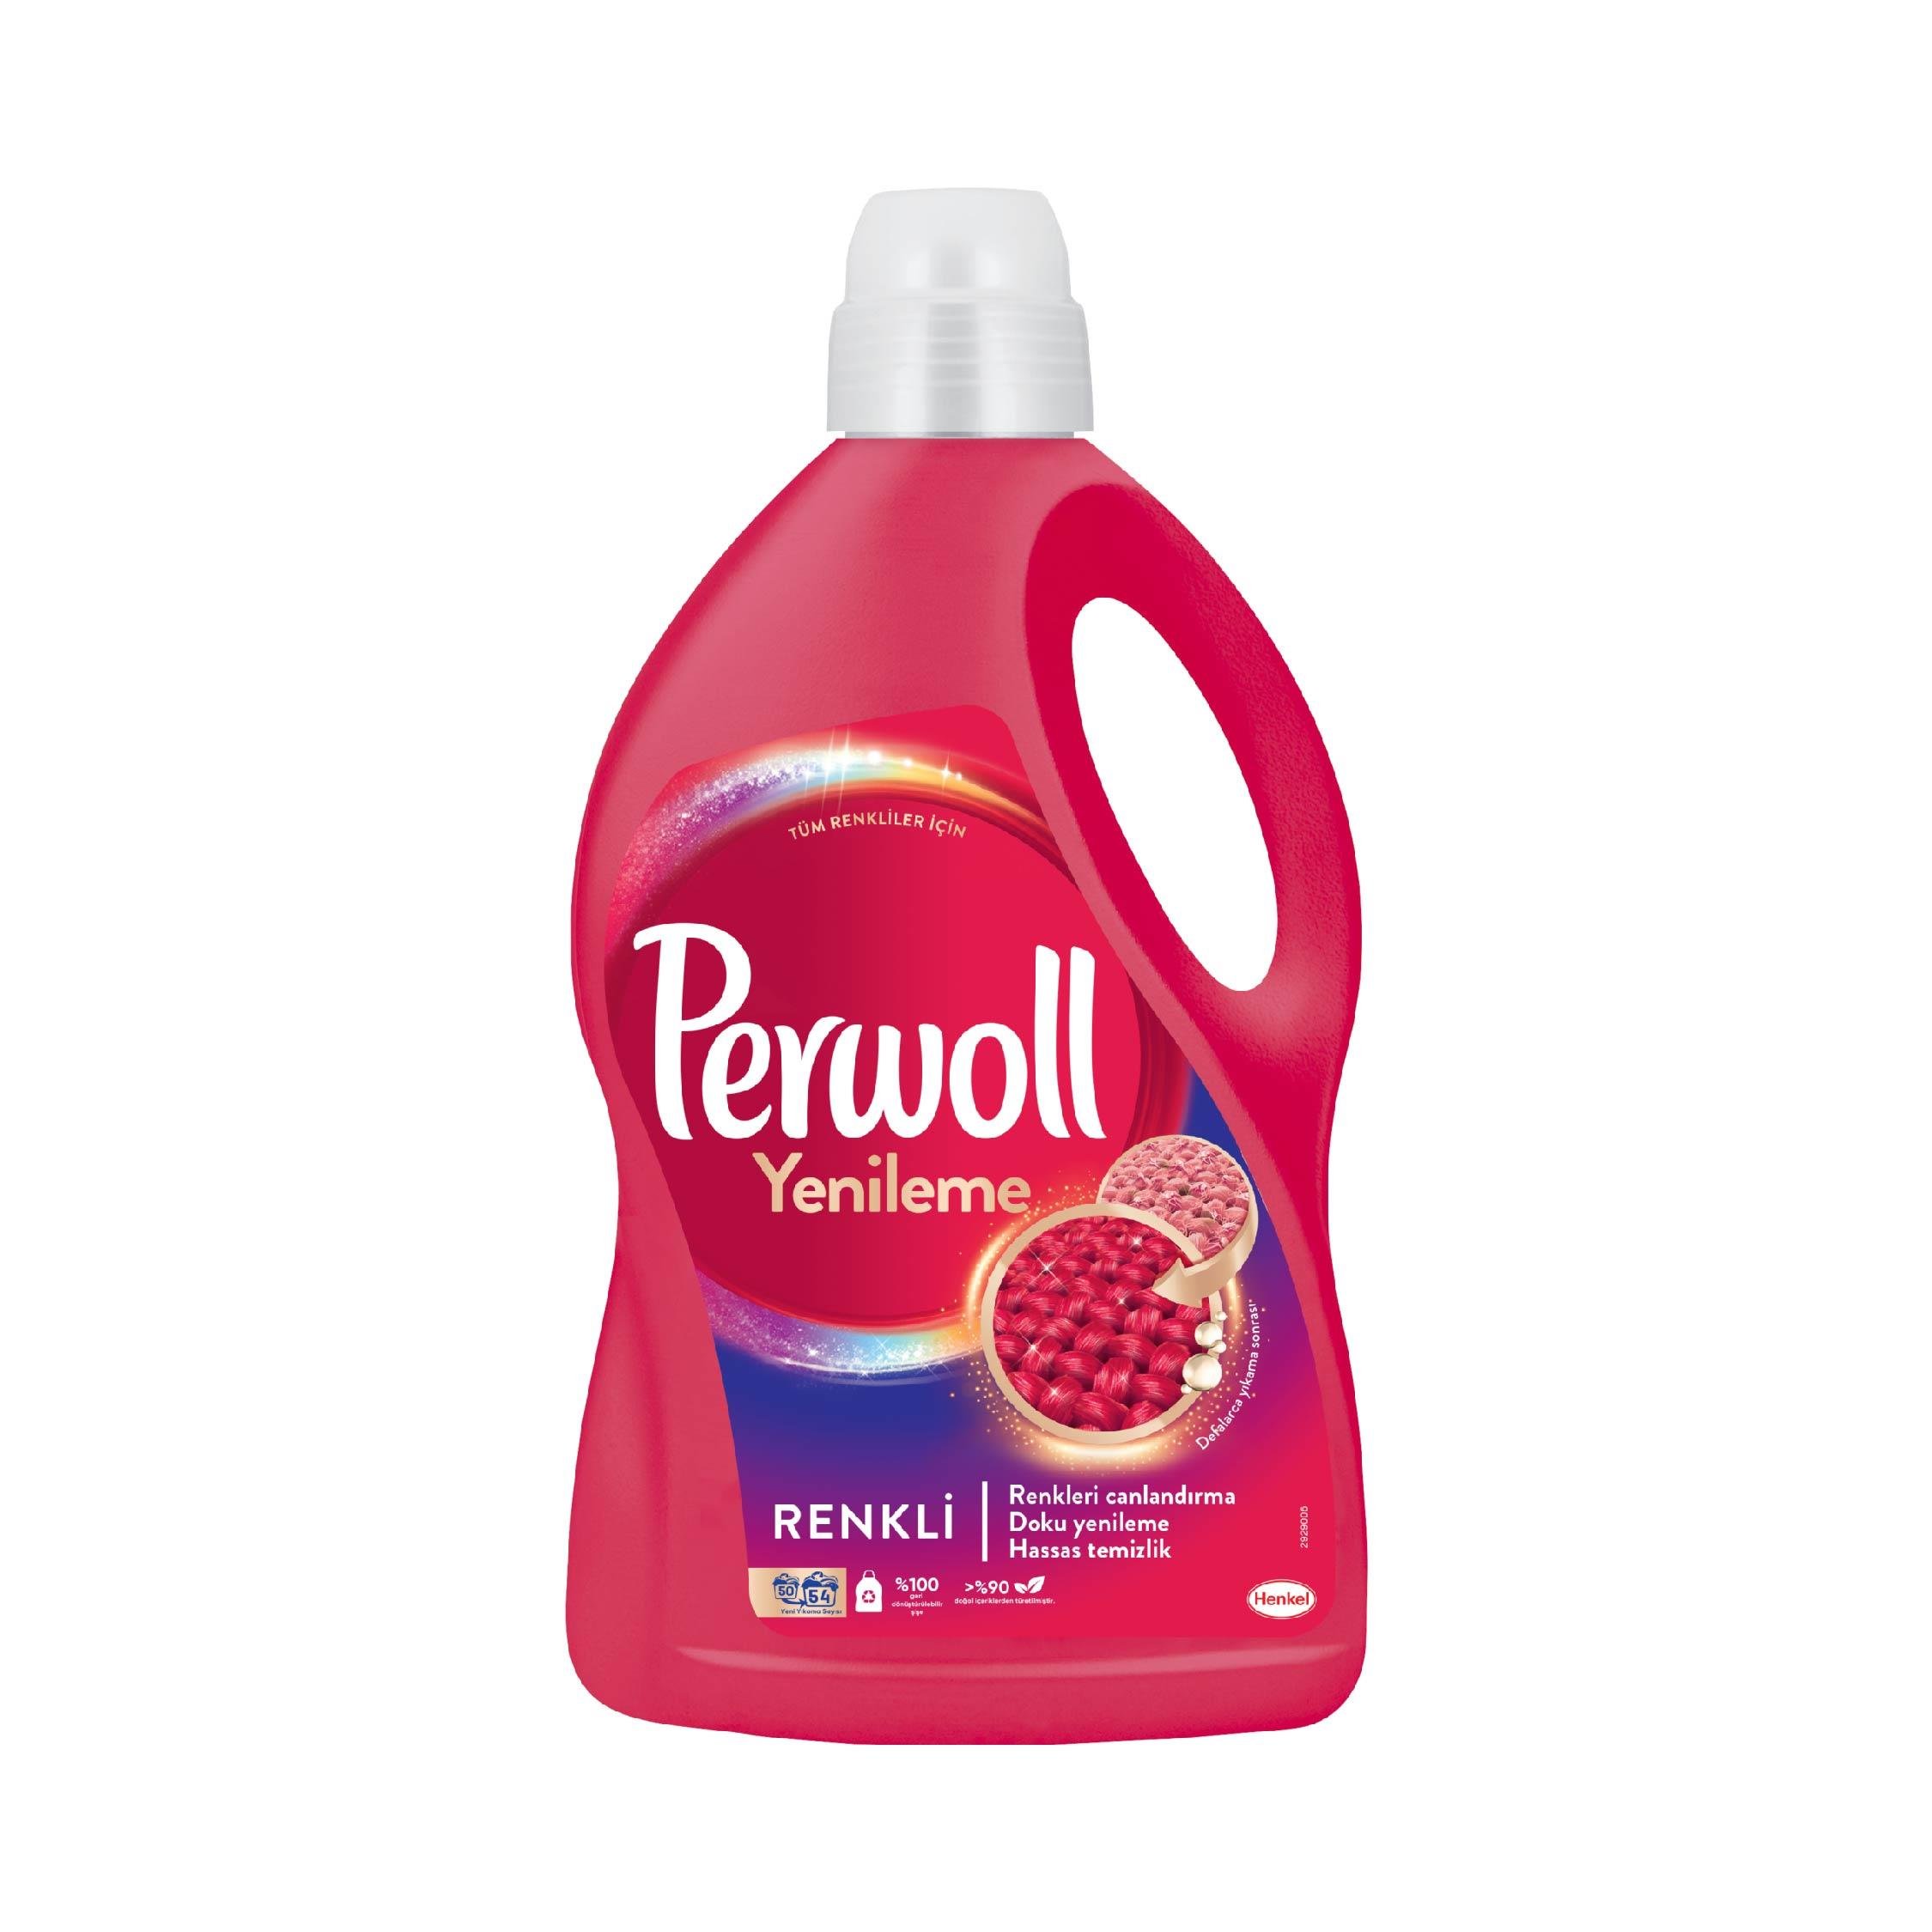 Perwoll Yenileme&Onarım Renkli Çamaşır Deterjanı 2970 ml